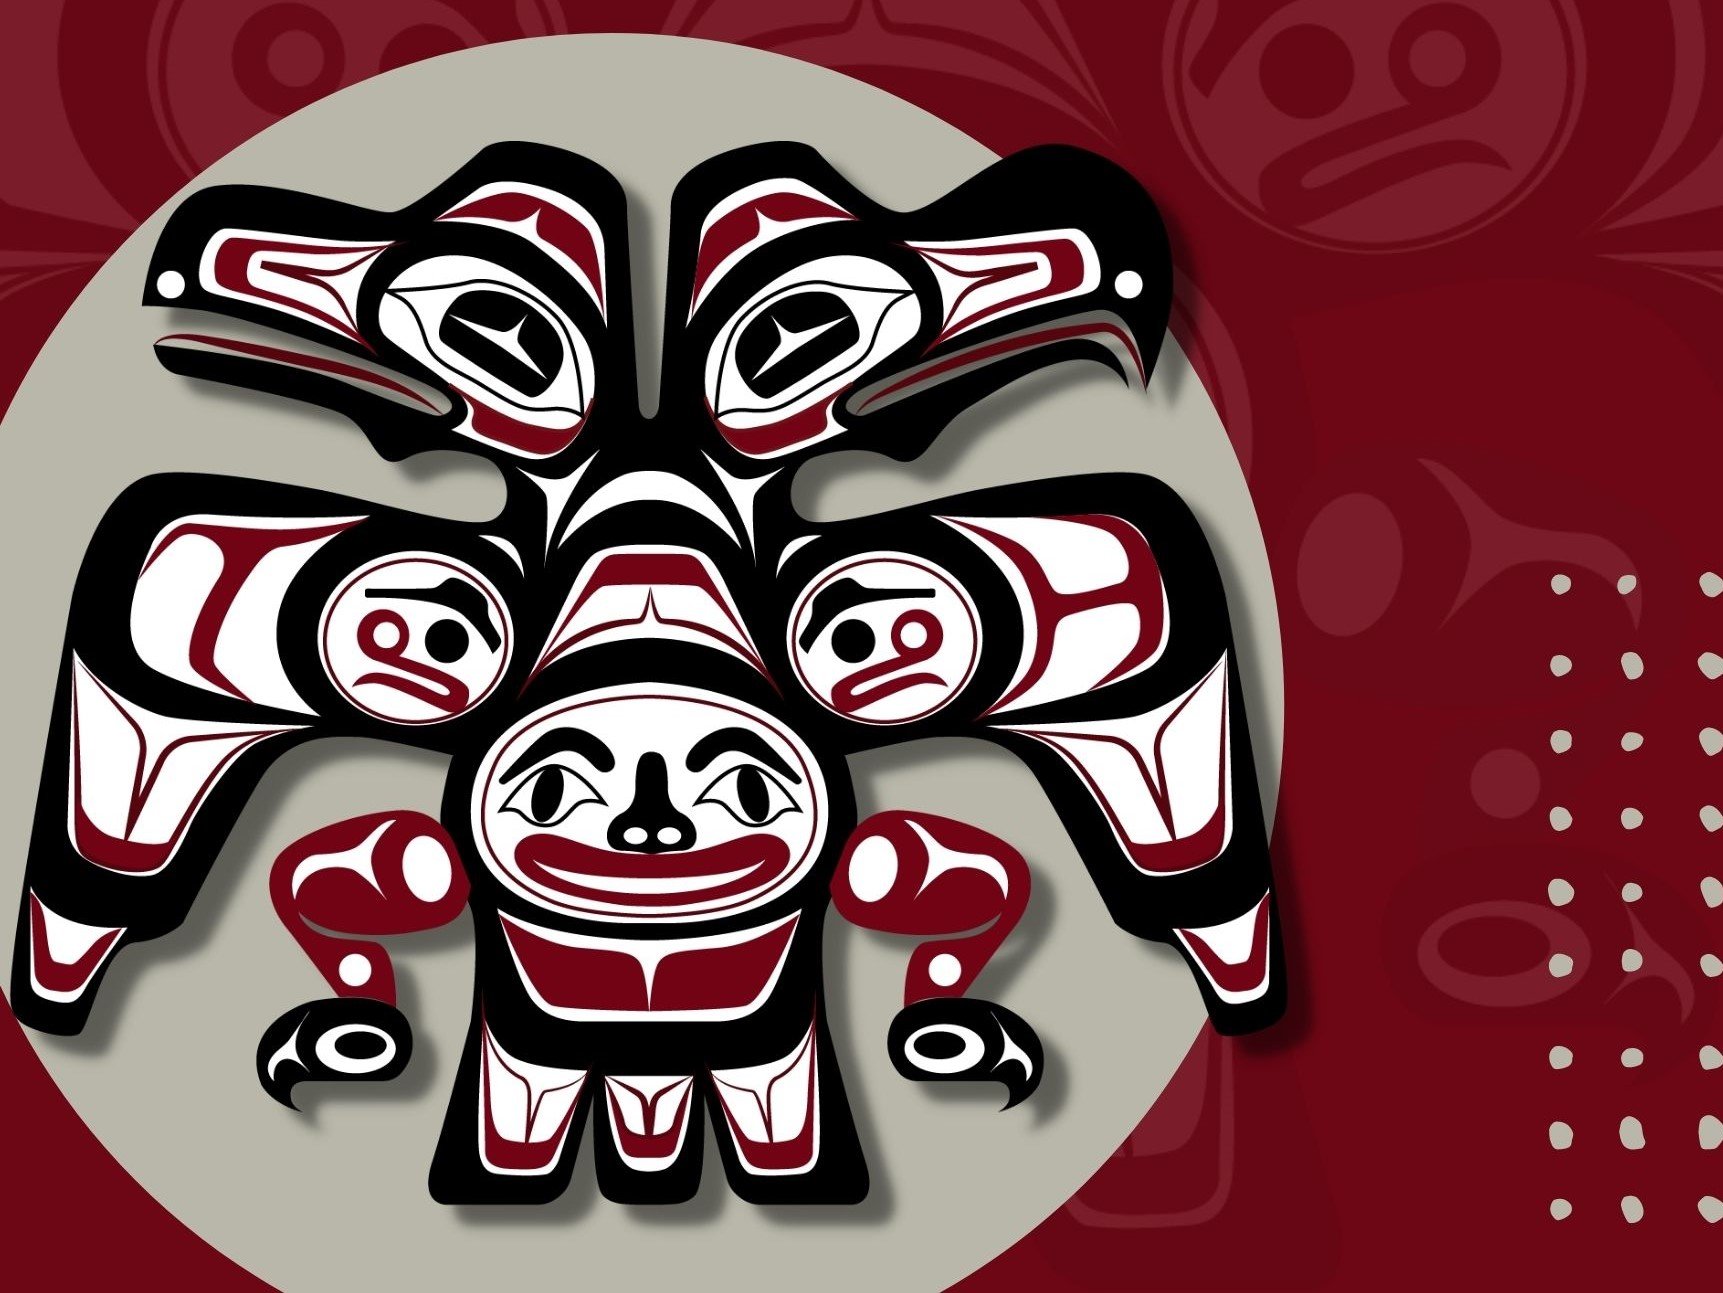 Tlingit-Haida-WA-Chapter-Placeholder.jpg